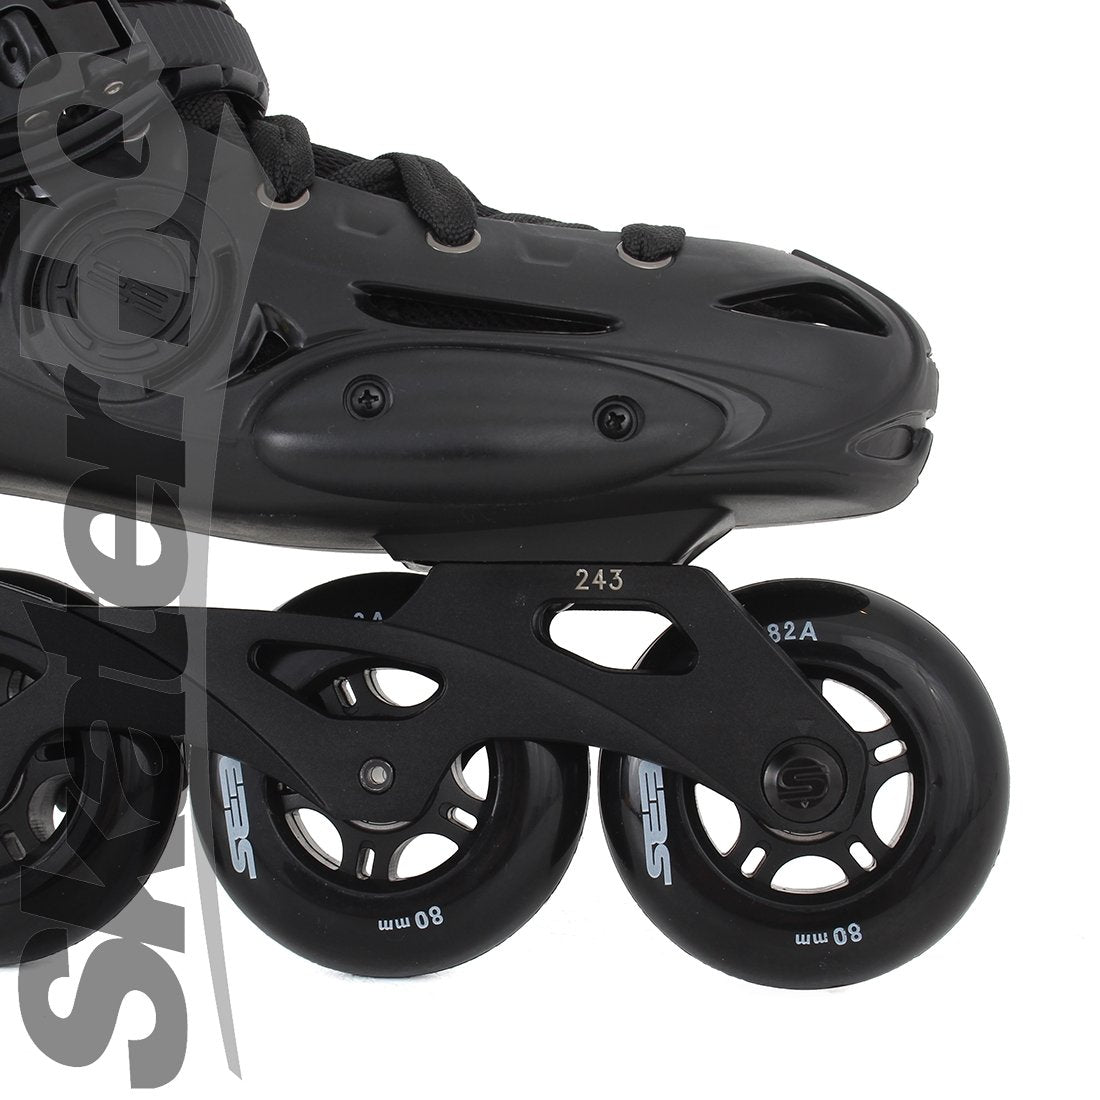 Seba E3 80 Premium Black - 13US EU47 Inline Rec Skates